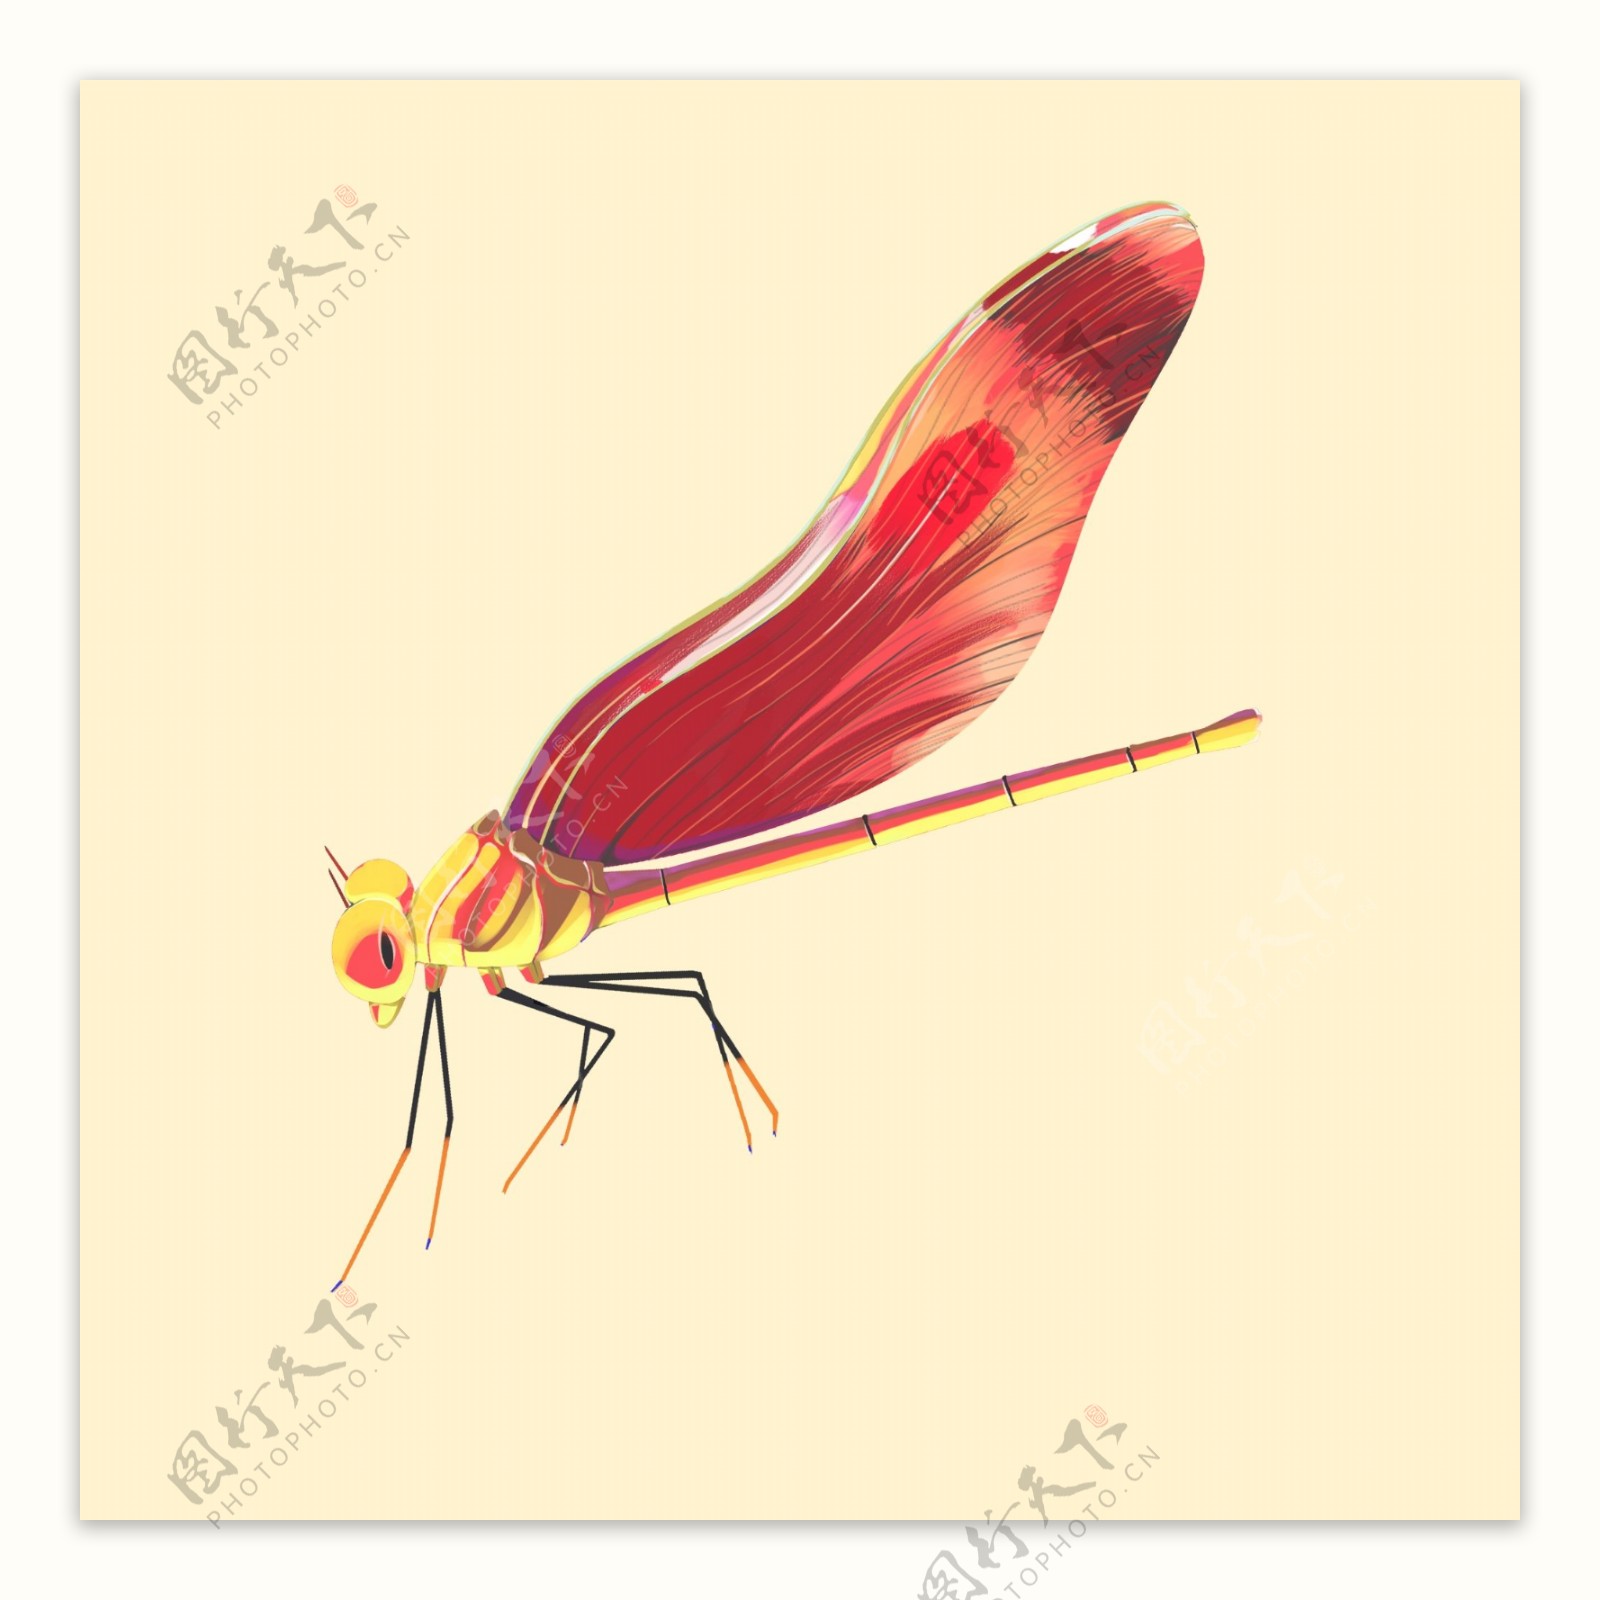 中国风蜻蜓飞行昆虫插图素材手绘元素